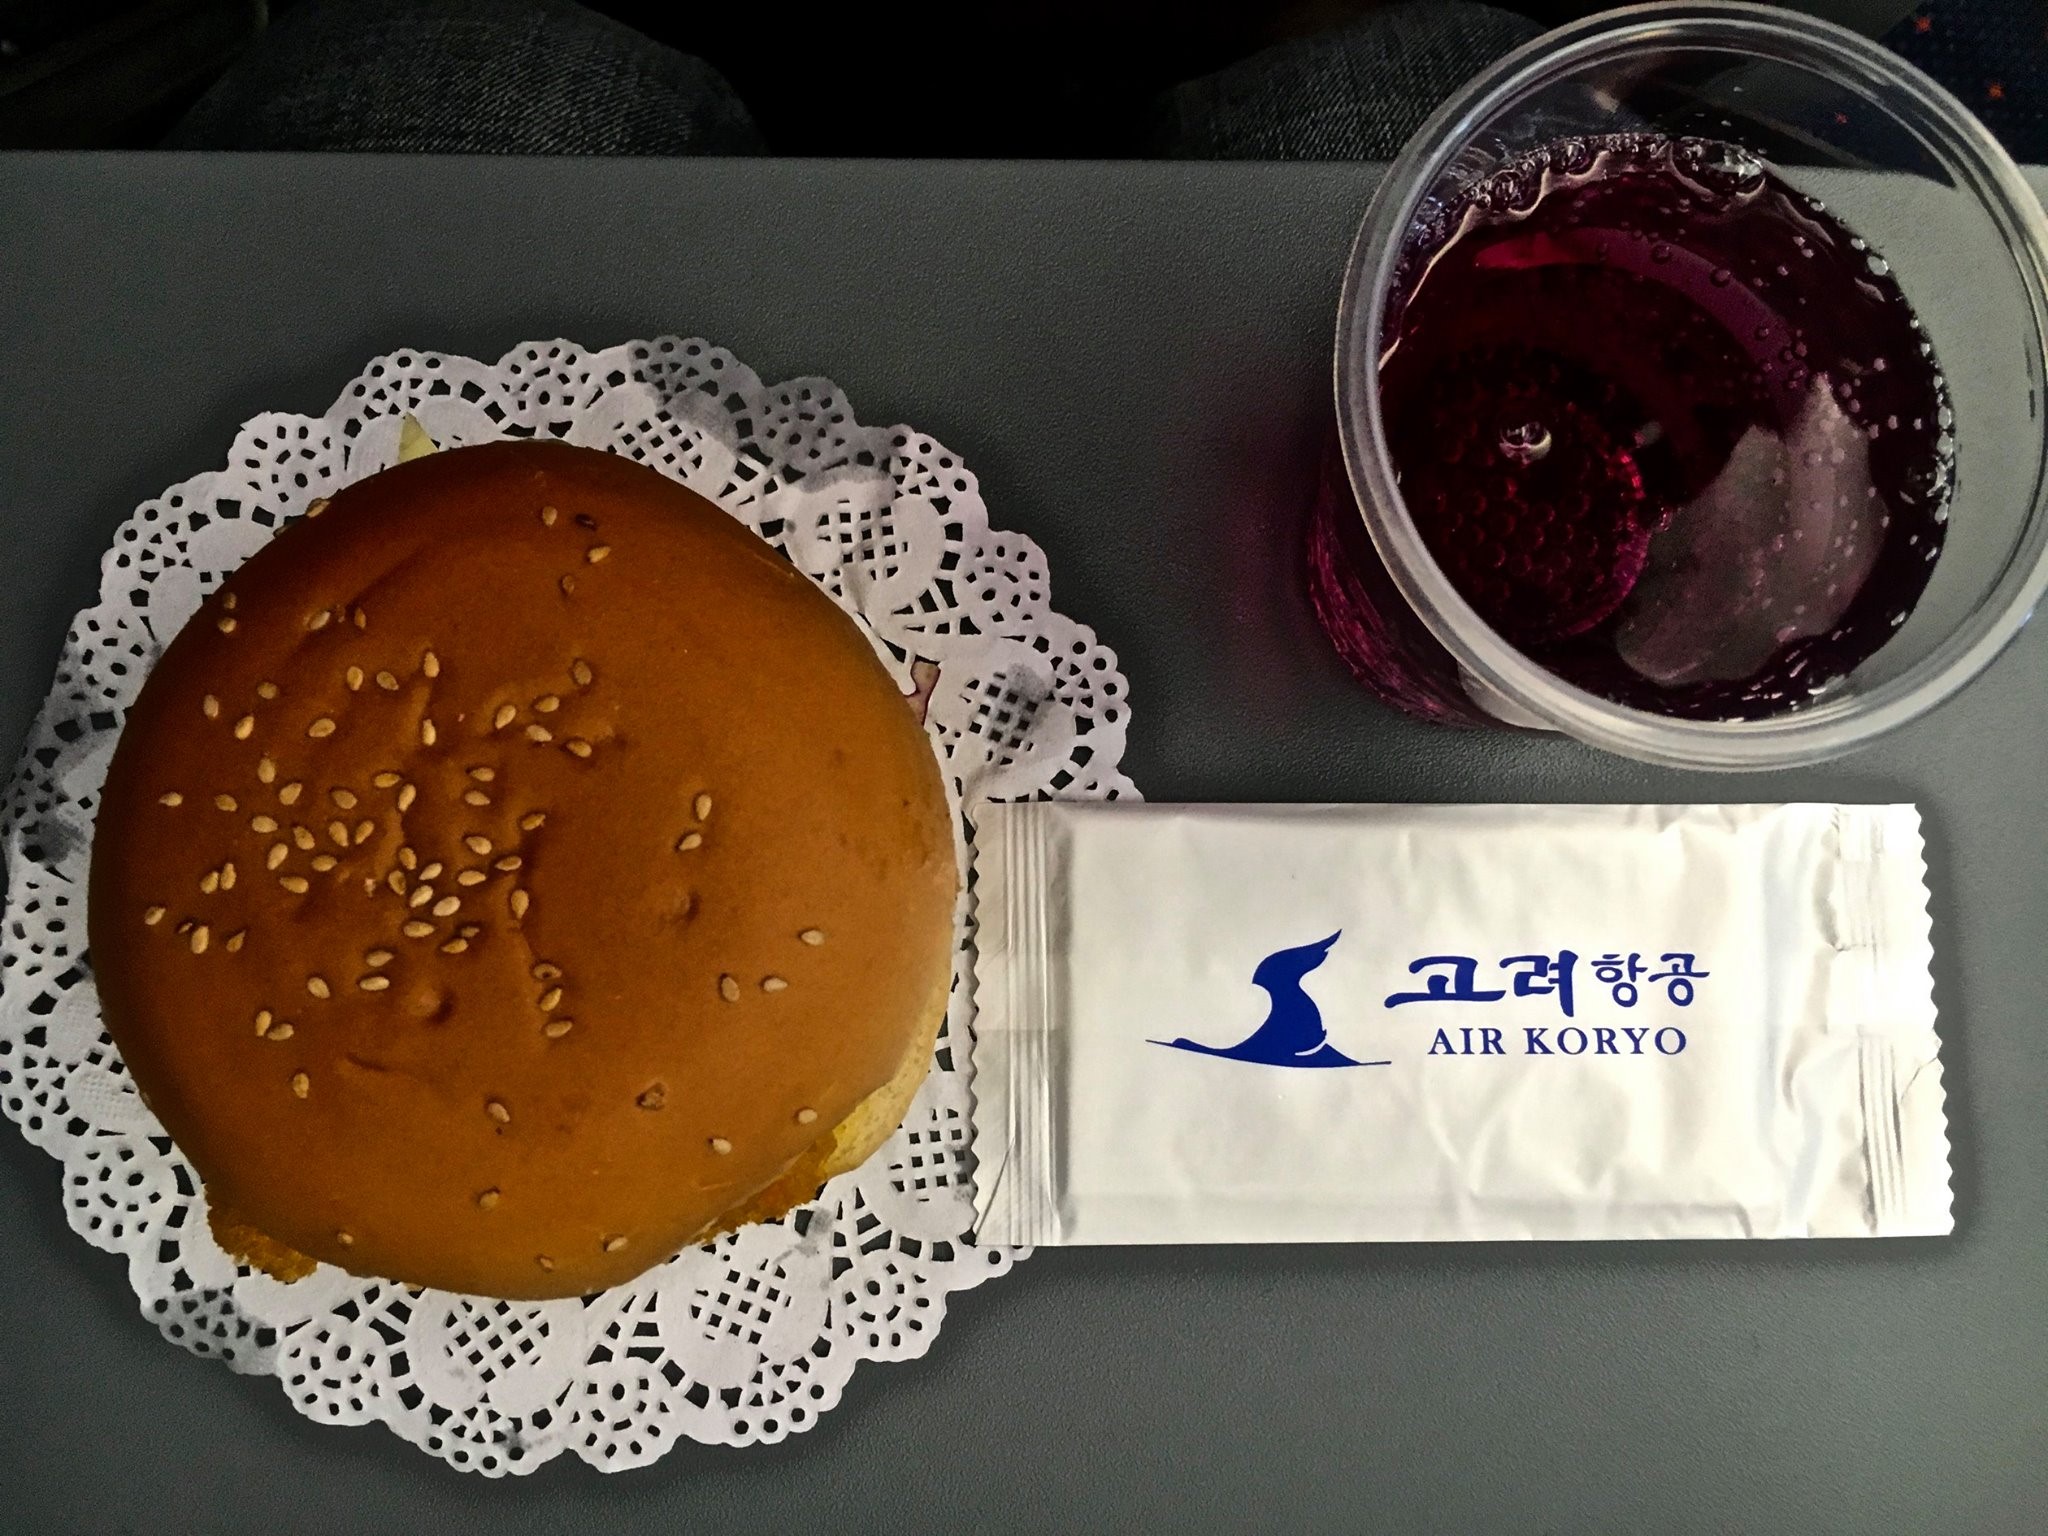 Air Koryo economy meal